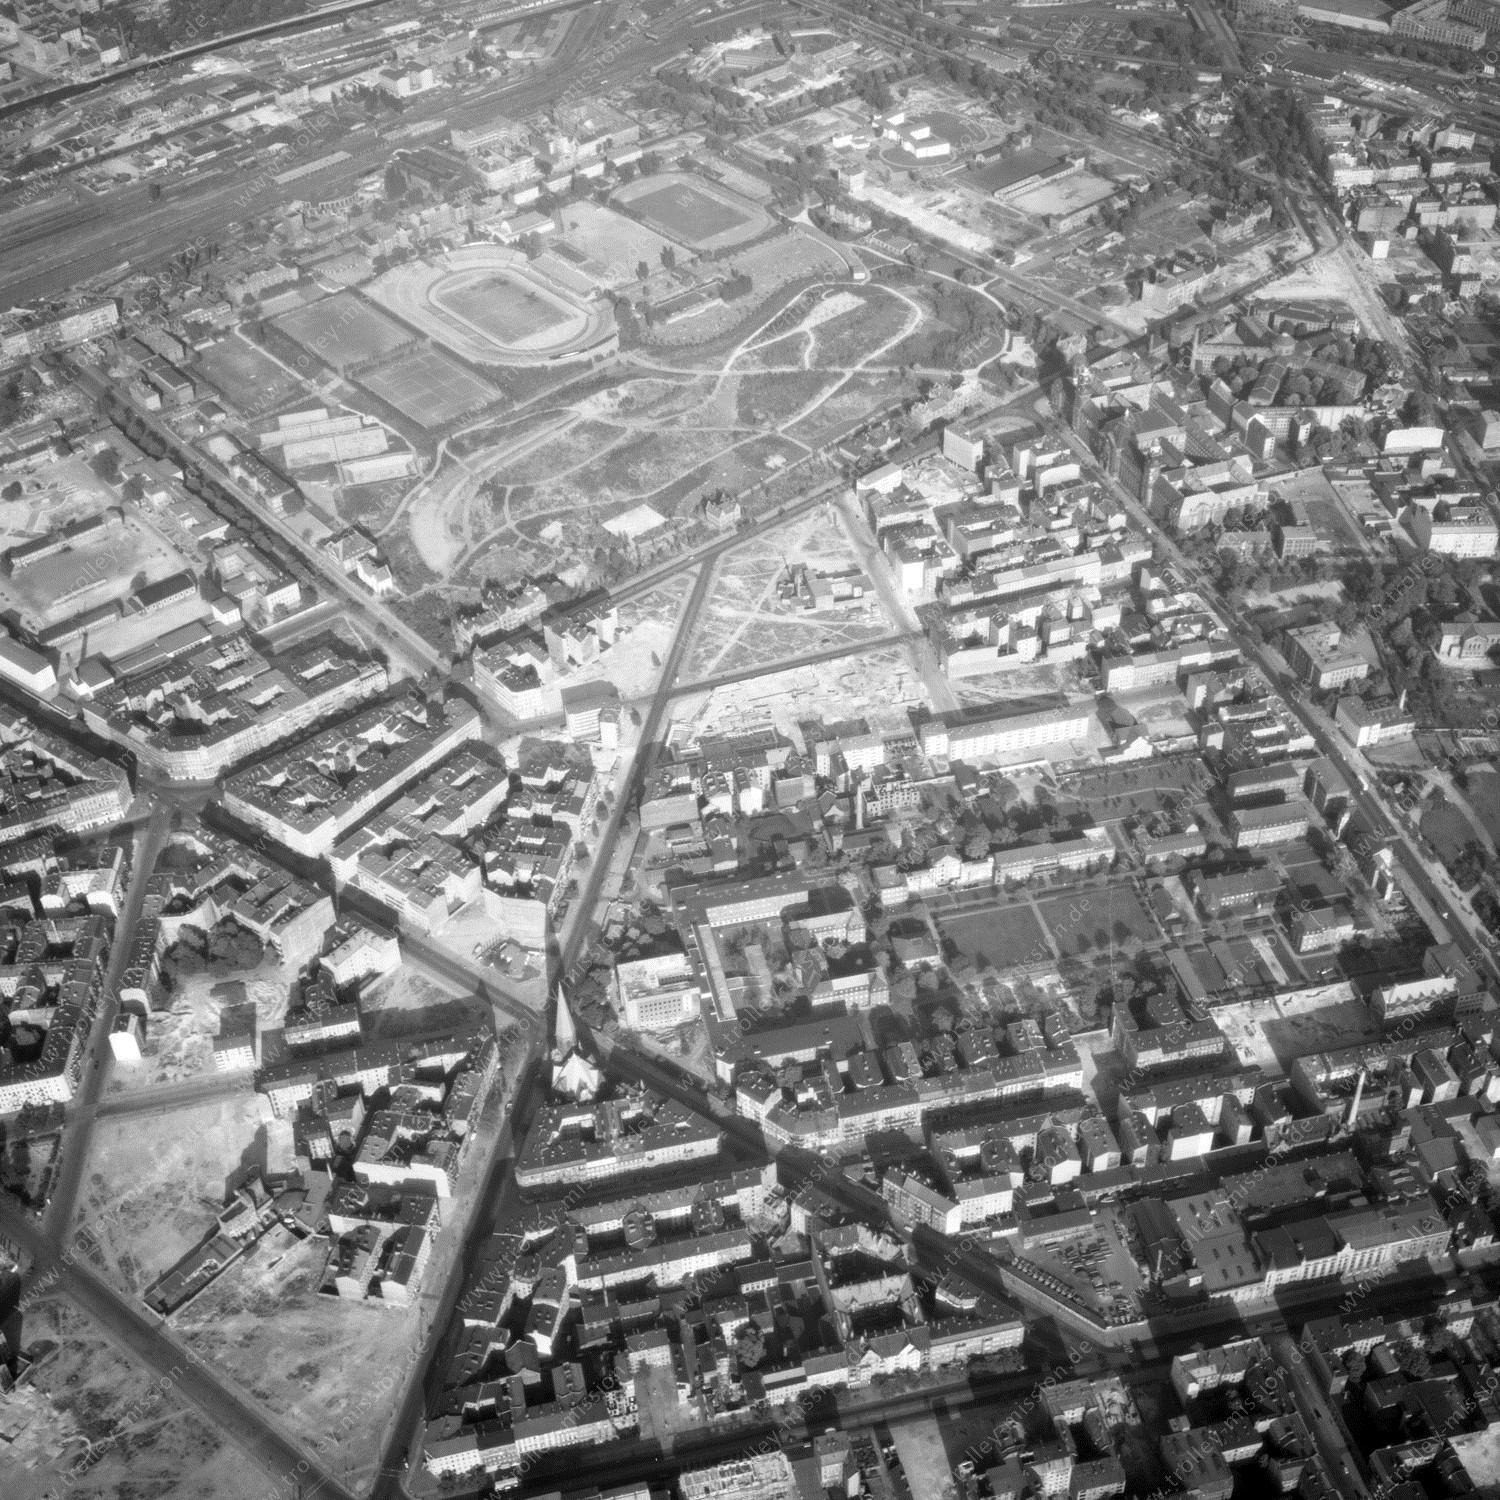 Alte Fotos und Luftbilder von Berlin - Luftbildaufnahme Nr. 02 - Historische Luftaufnahmen von West-Berlin aus dem Jahr 1954 - Flugstrecke Oscar